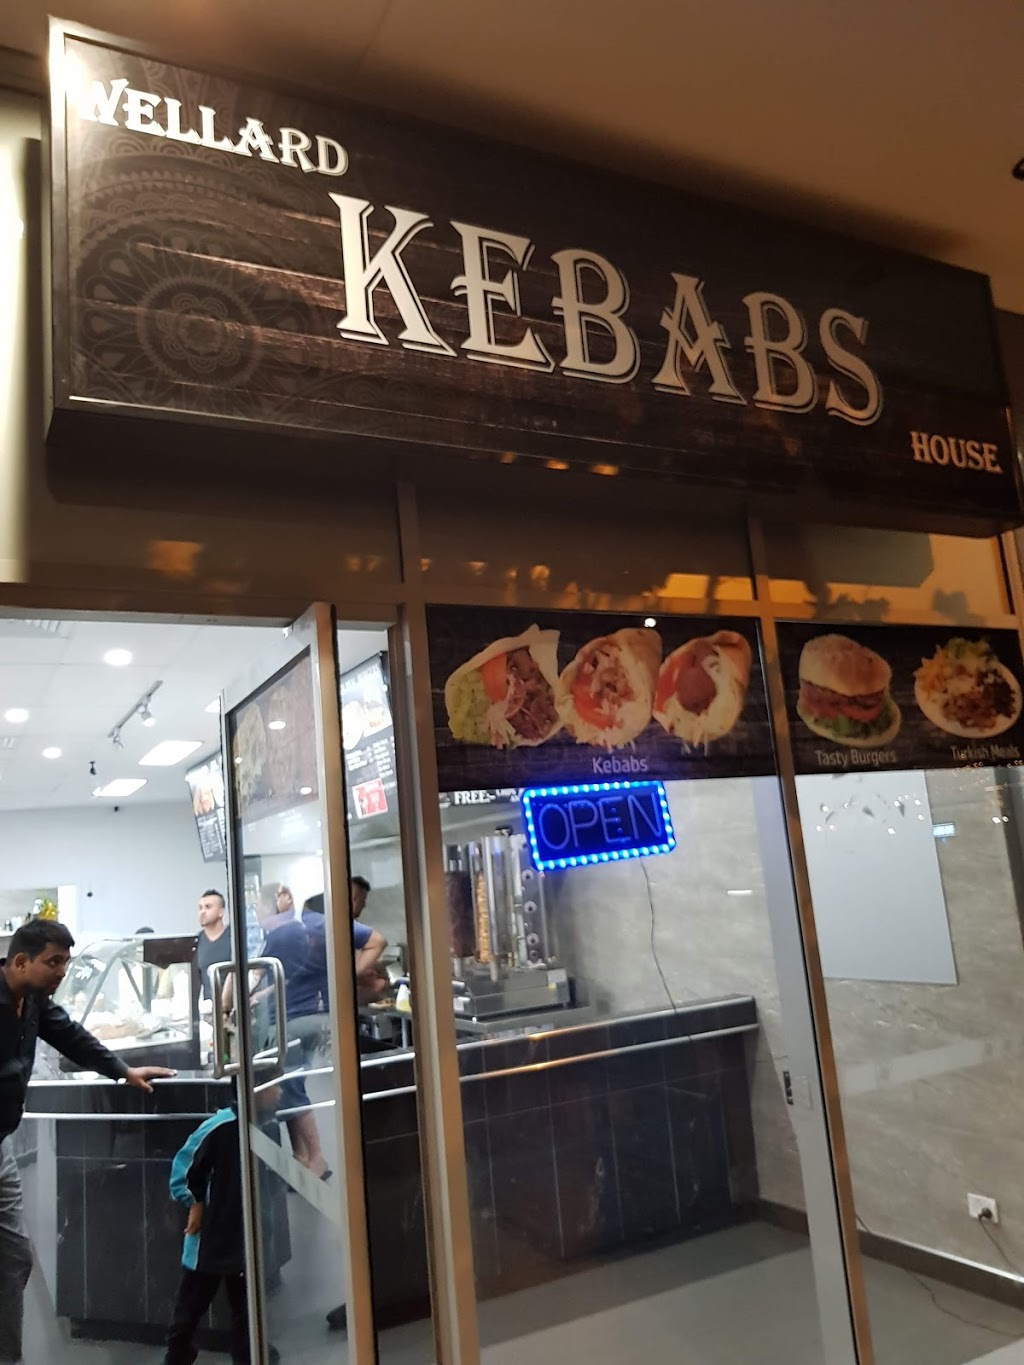 Wellard Kebab House | restaurant | 10a The Strand, Wellard WA 6170, Australia | 0456050951 OR +61 456 050 951